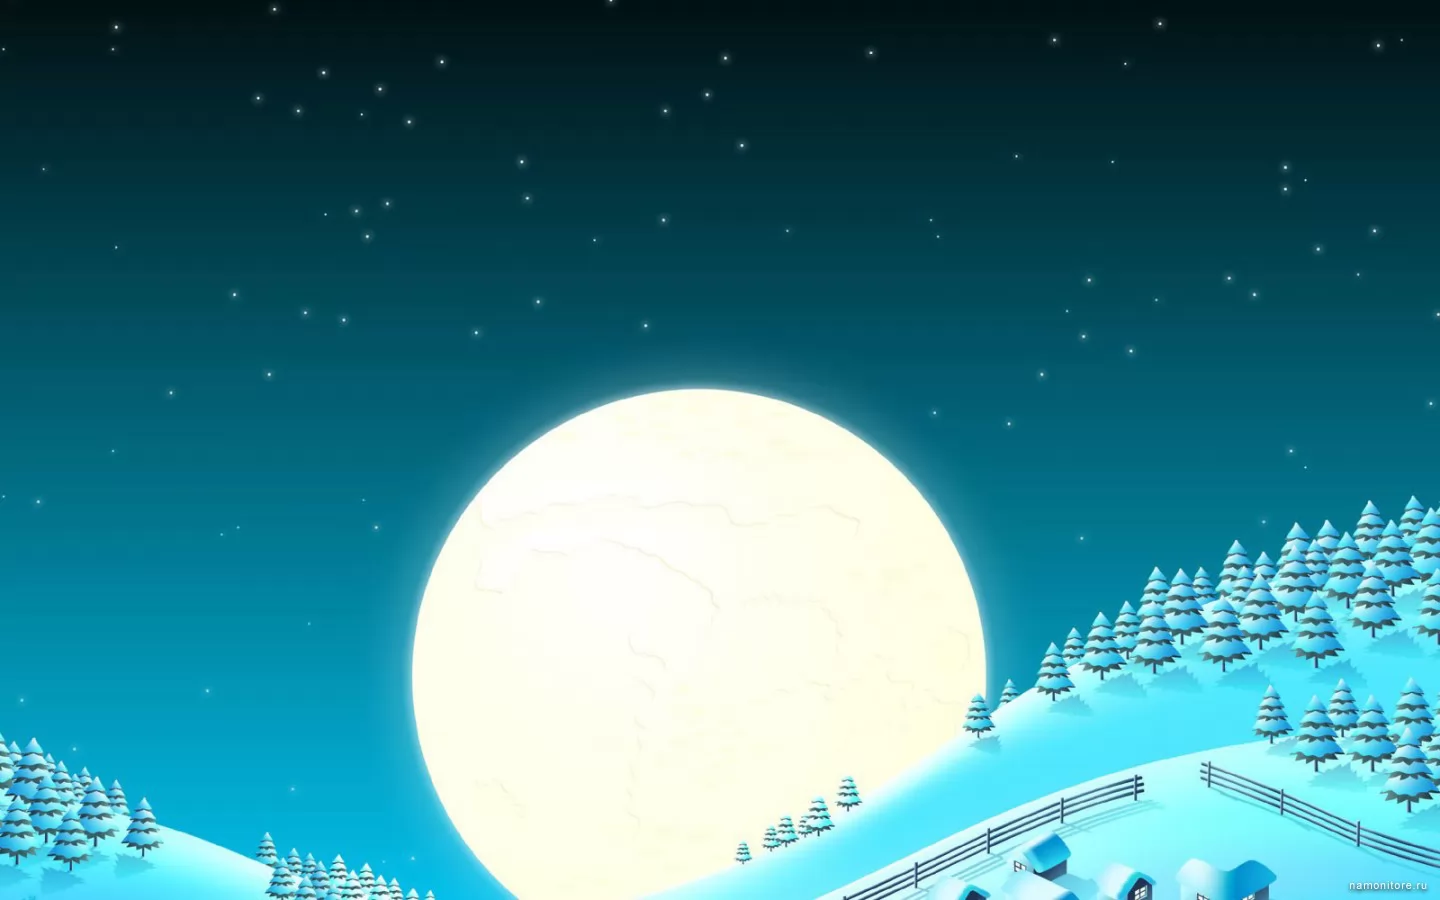 Огромная луна, зима, луна, лучшее, ночь, рисованное, синее х